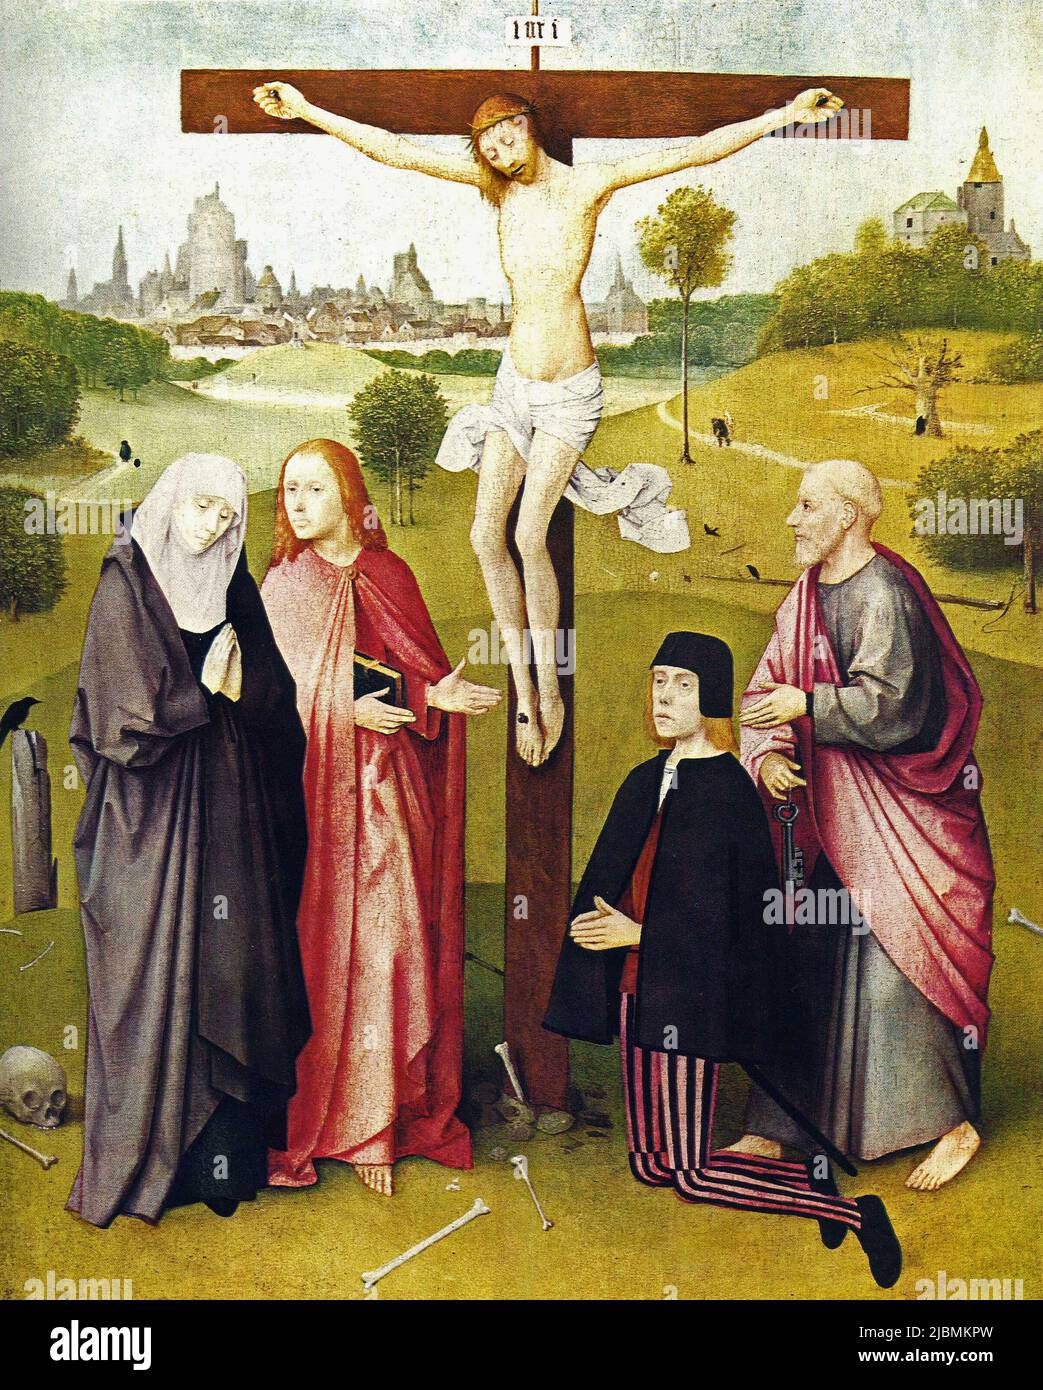 'Cristo en la Cruz, con la Virgen y San Juan y un donante arrodillado con su santo patrono, San Pedro. Pintura de Hieronymus Bosch. Bruselas, Musée Foto de stock